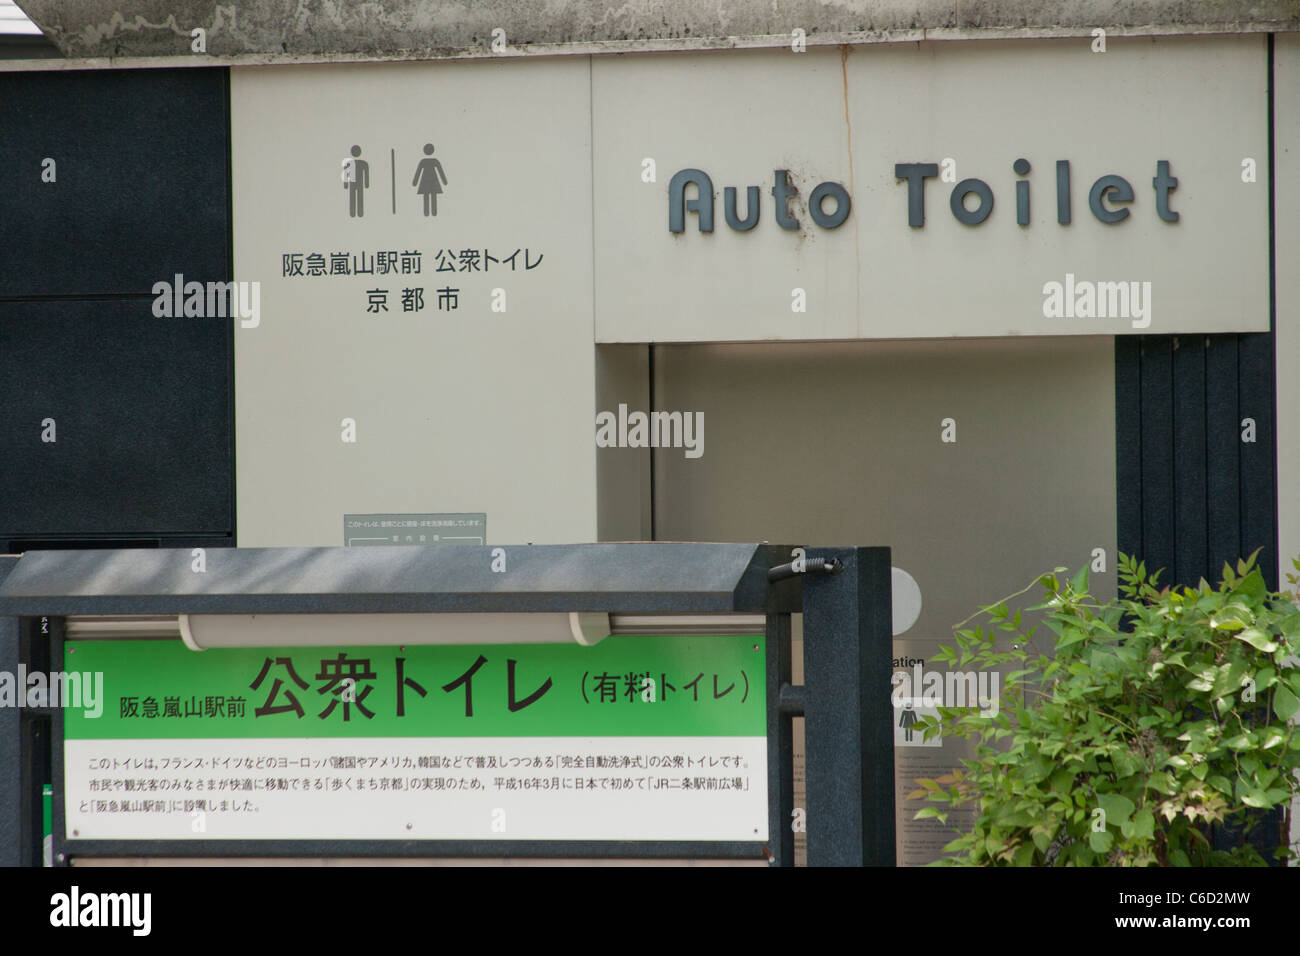 Auto toilet in Tokyo Stock Photo